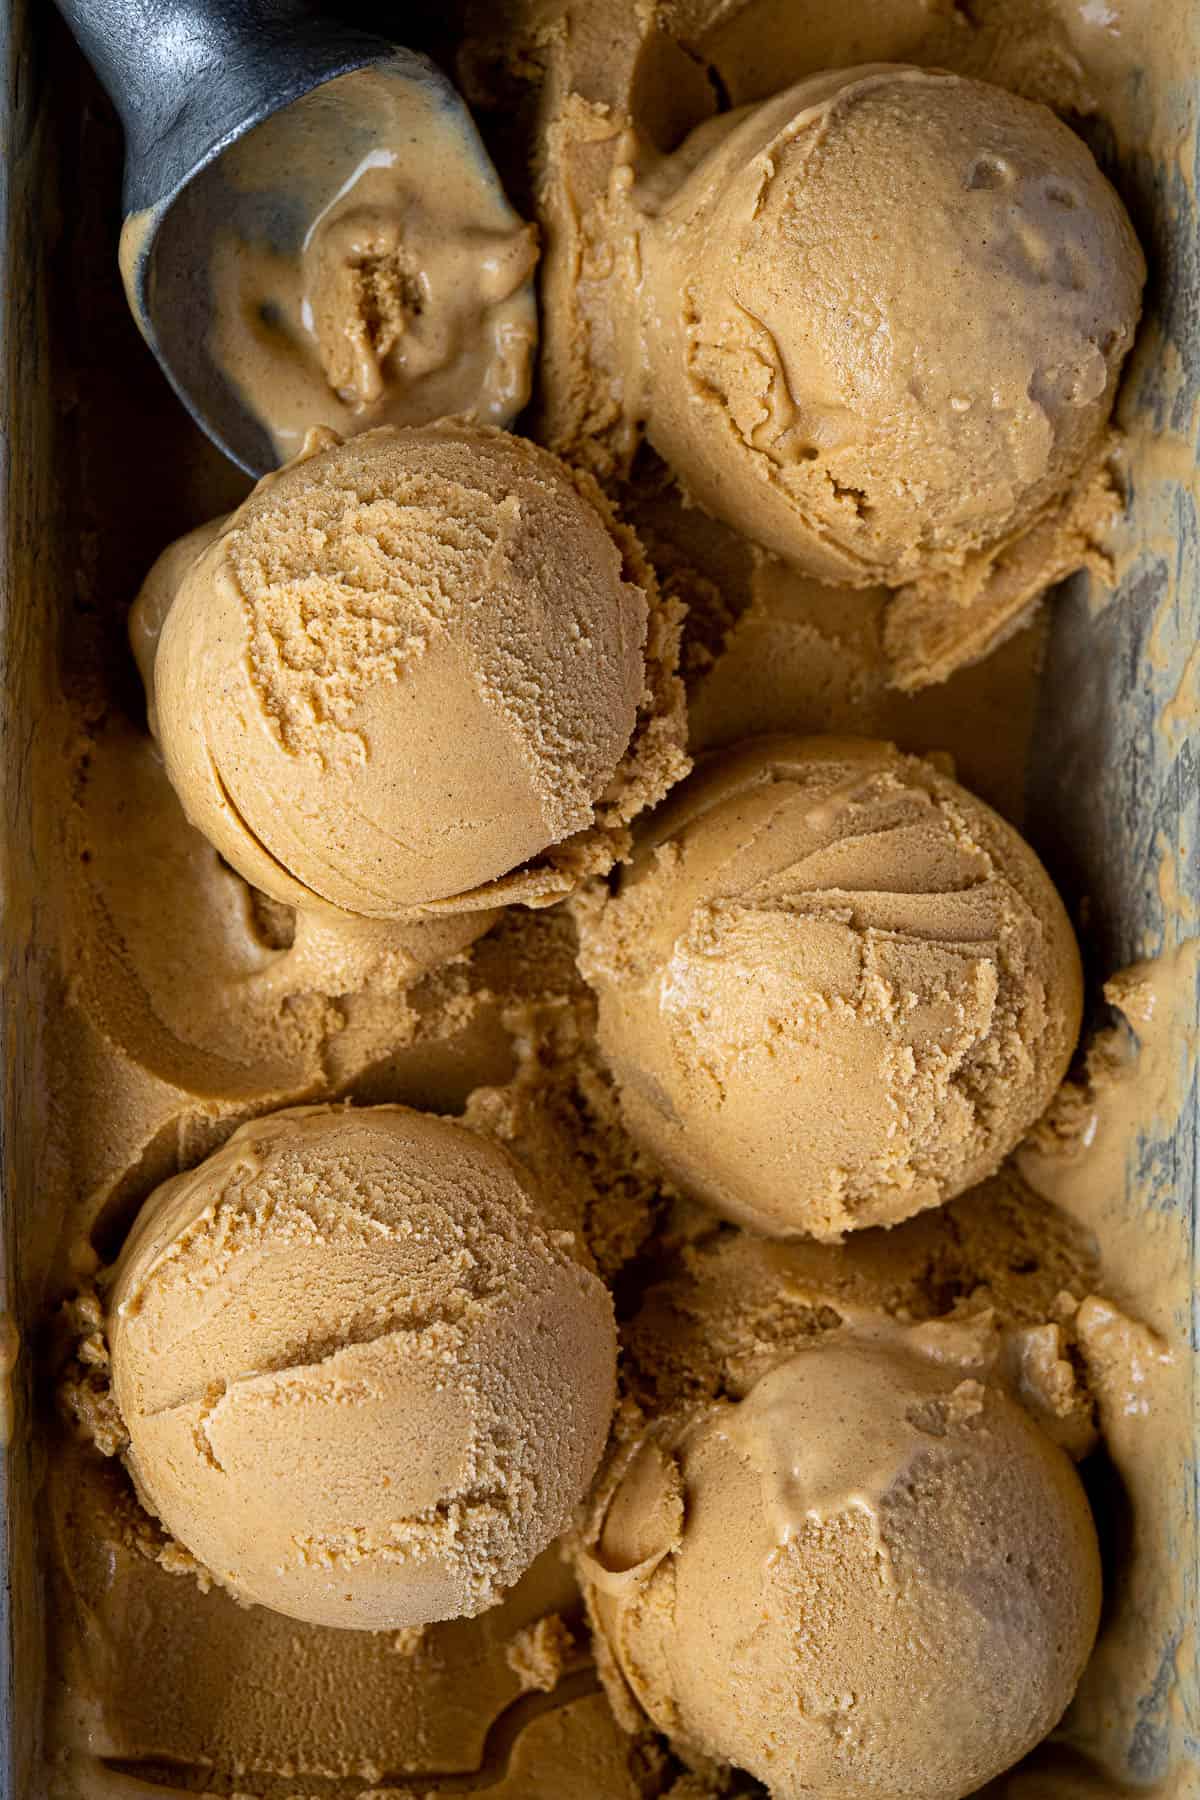 Close up of scoops of vegan pumpkin ice cream.